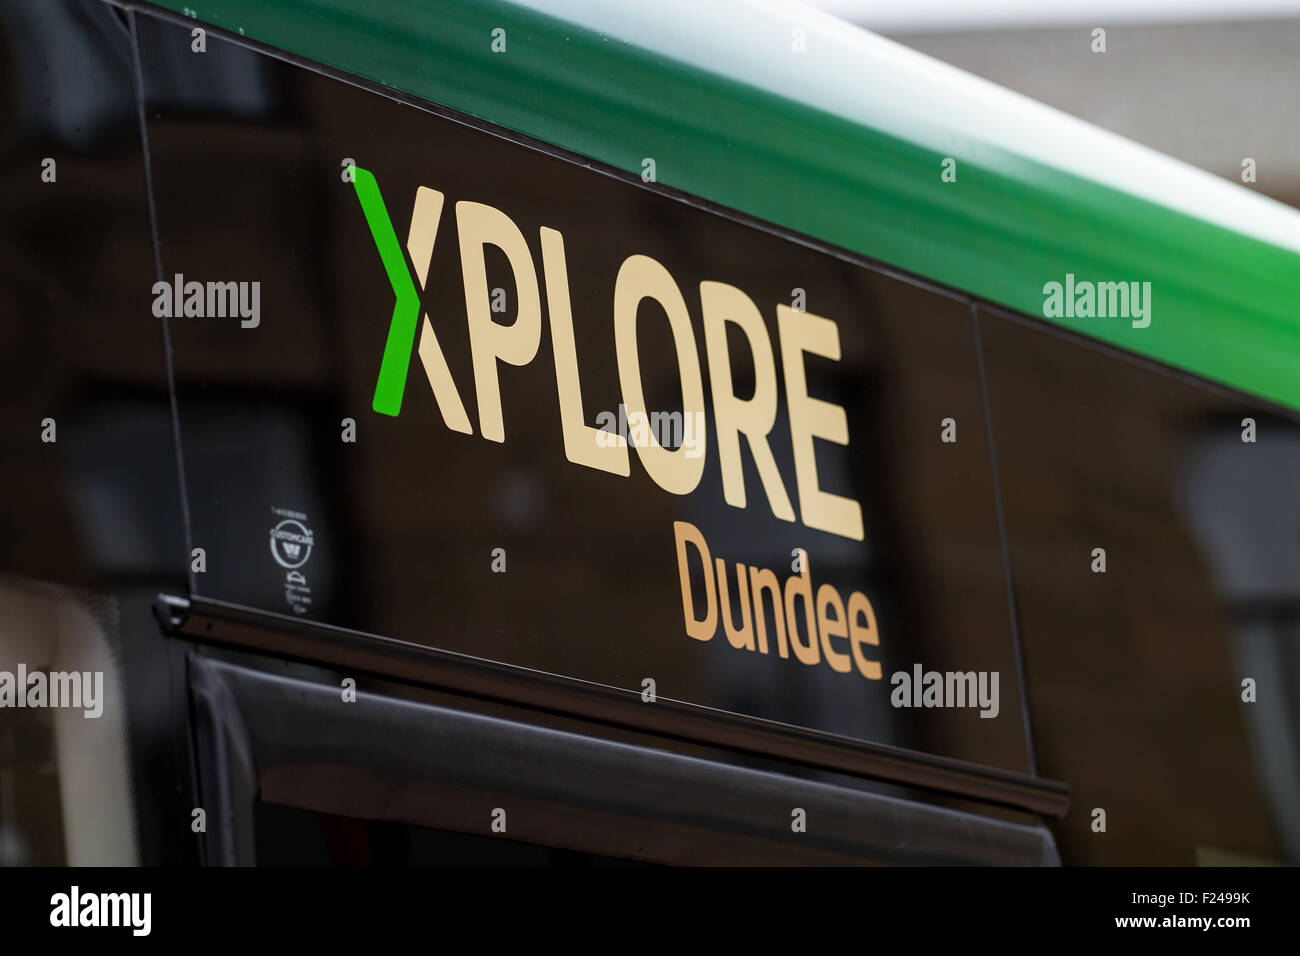 Dundee, Tayside, Scozia, Regno Unito, 11 settembre 2015. Xplore Dundee nuovo servizio di autobus urbano sarà in funzione il 13 settembre 2015. Xplore Dundee è parte del National Express Group che sarà una nuova Dundee il servizio di trasporto pubblico con la nuova flotta di autobus per la città. Credito: Dundee fotografico / Alamy Live News. Foto Stock